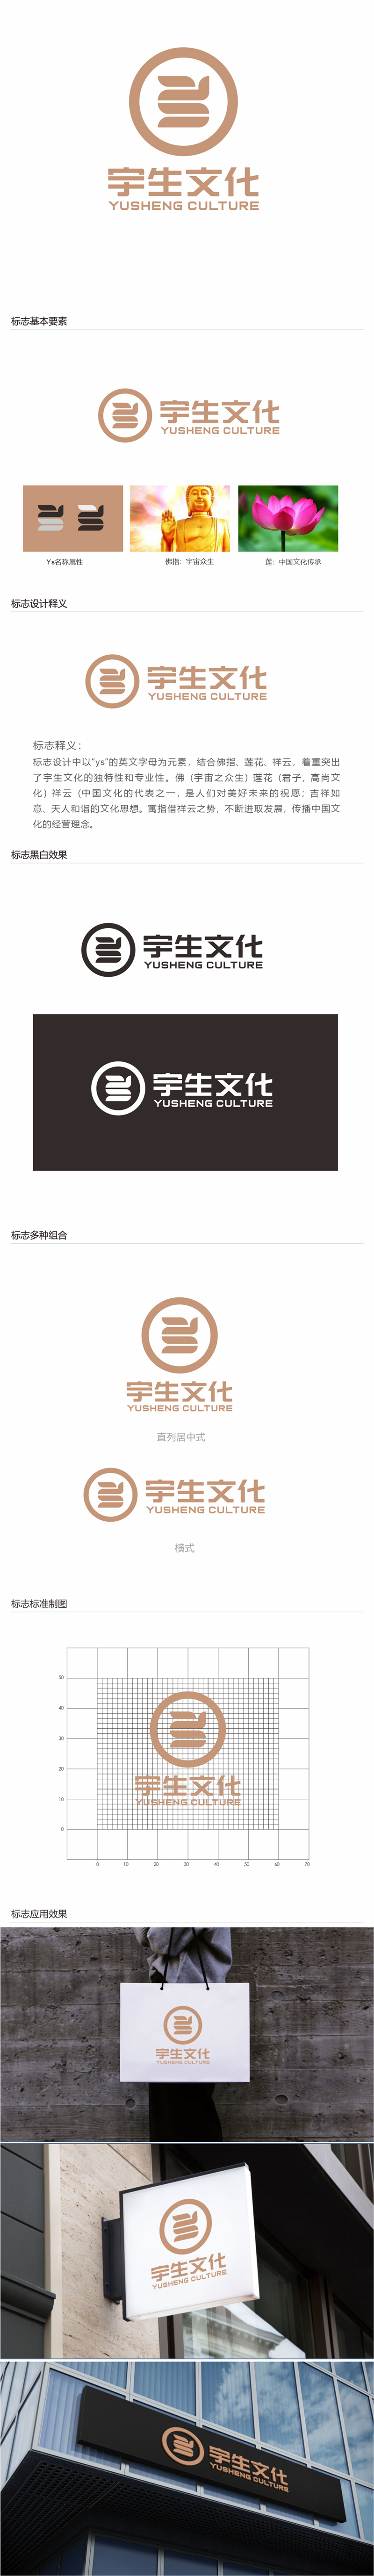 唐国强的山东宇生文化股份有限公司logo设计